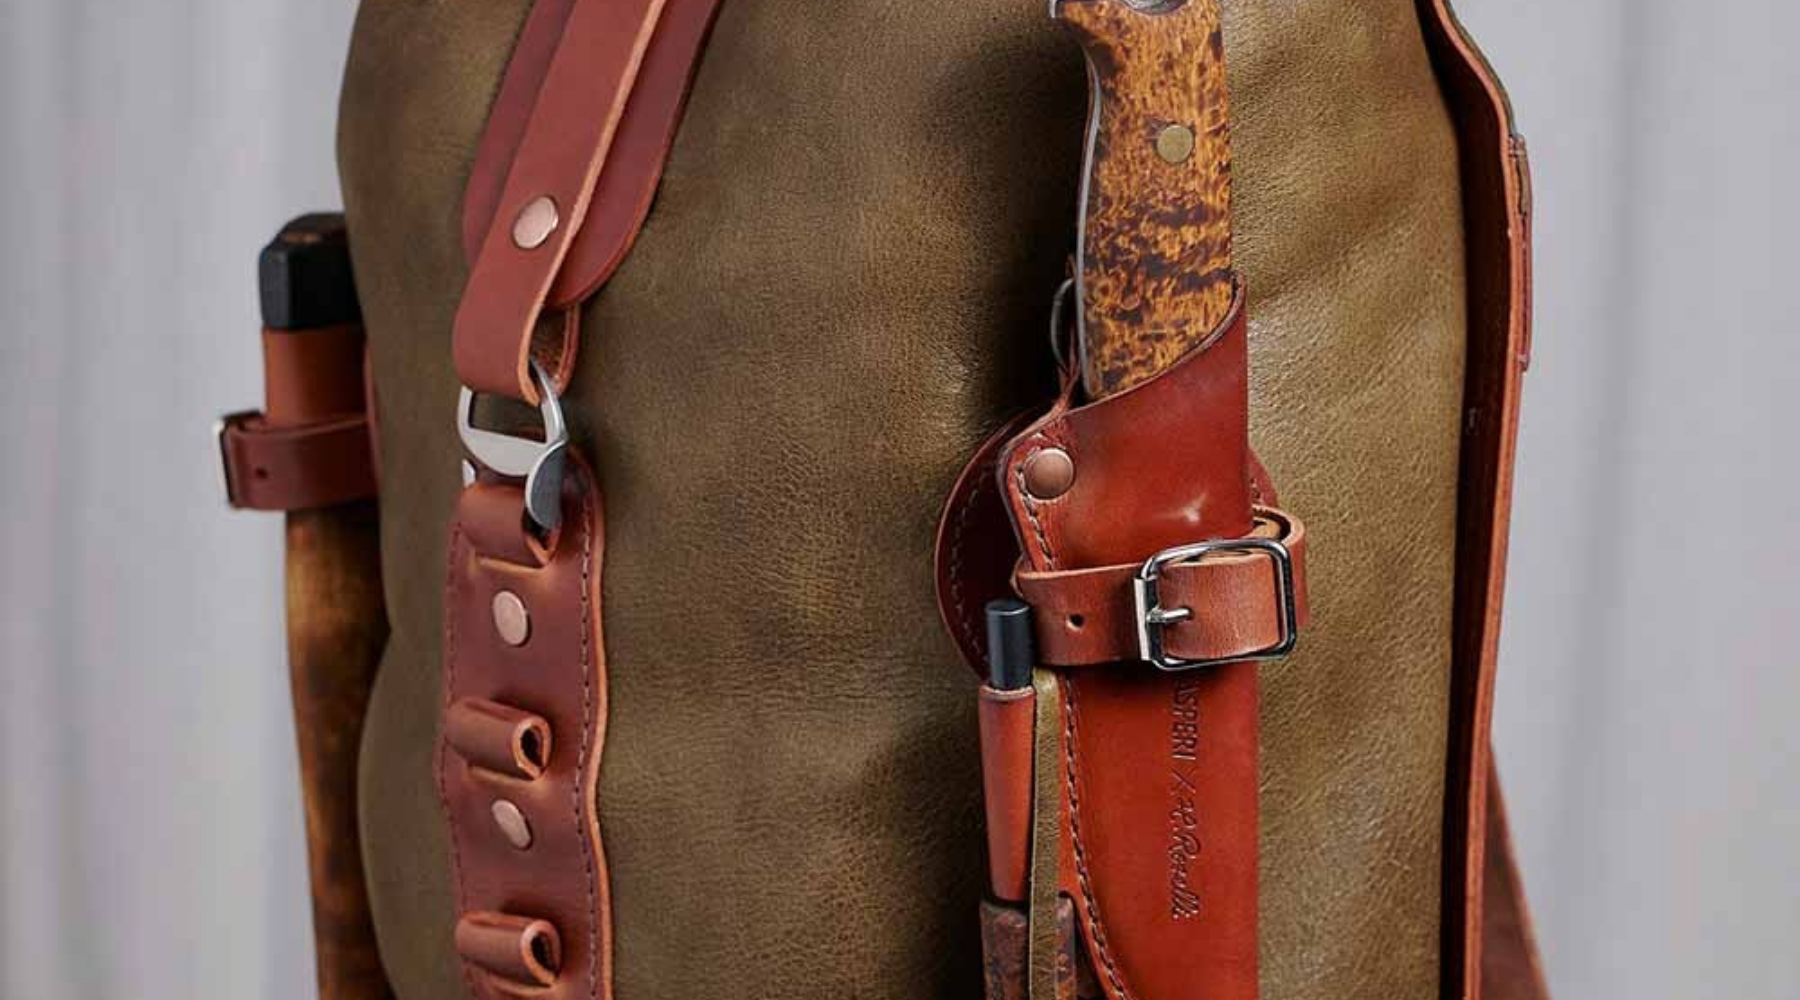 Kasperi x Roselli nygammalt Exklusivt samarbete med ryggsäck tillhörande finsk handgjord puukko kniv och handgjord yxa 